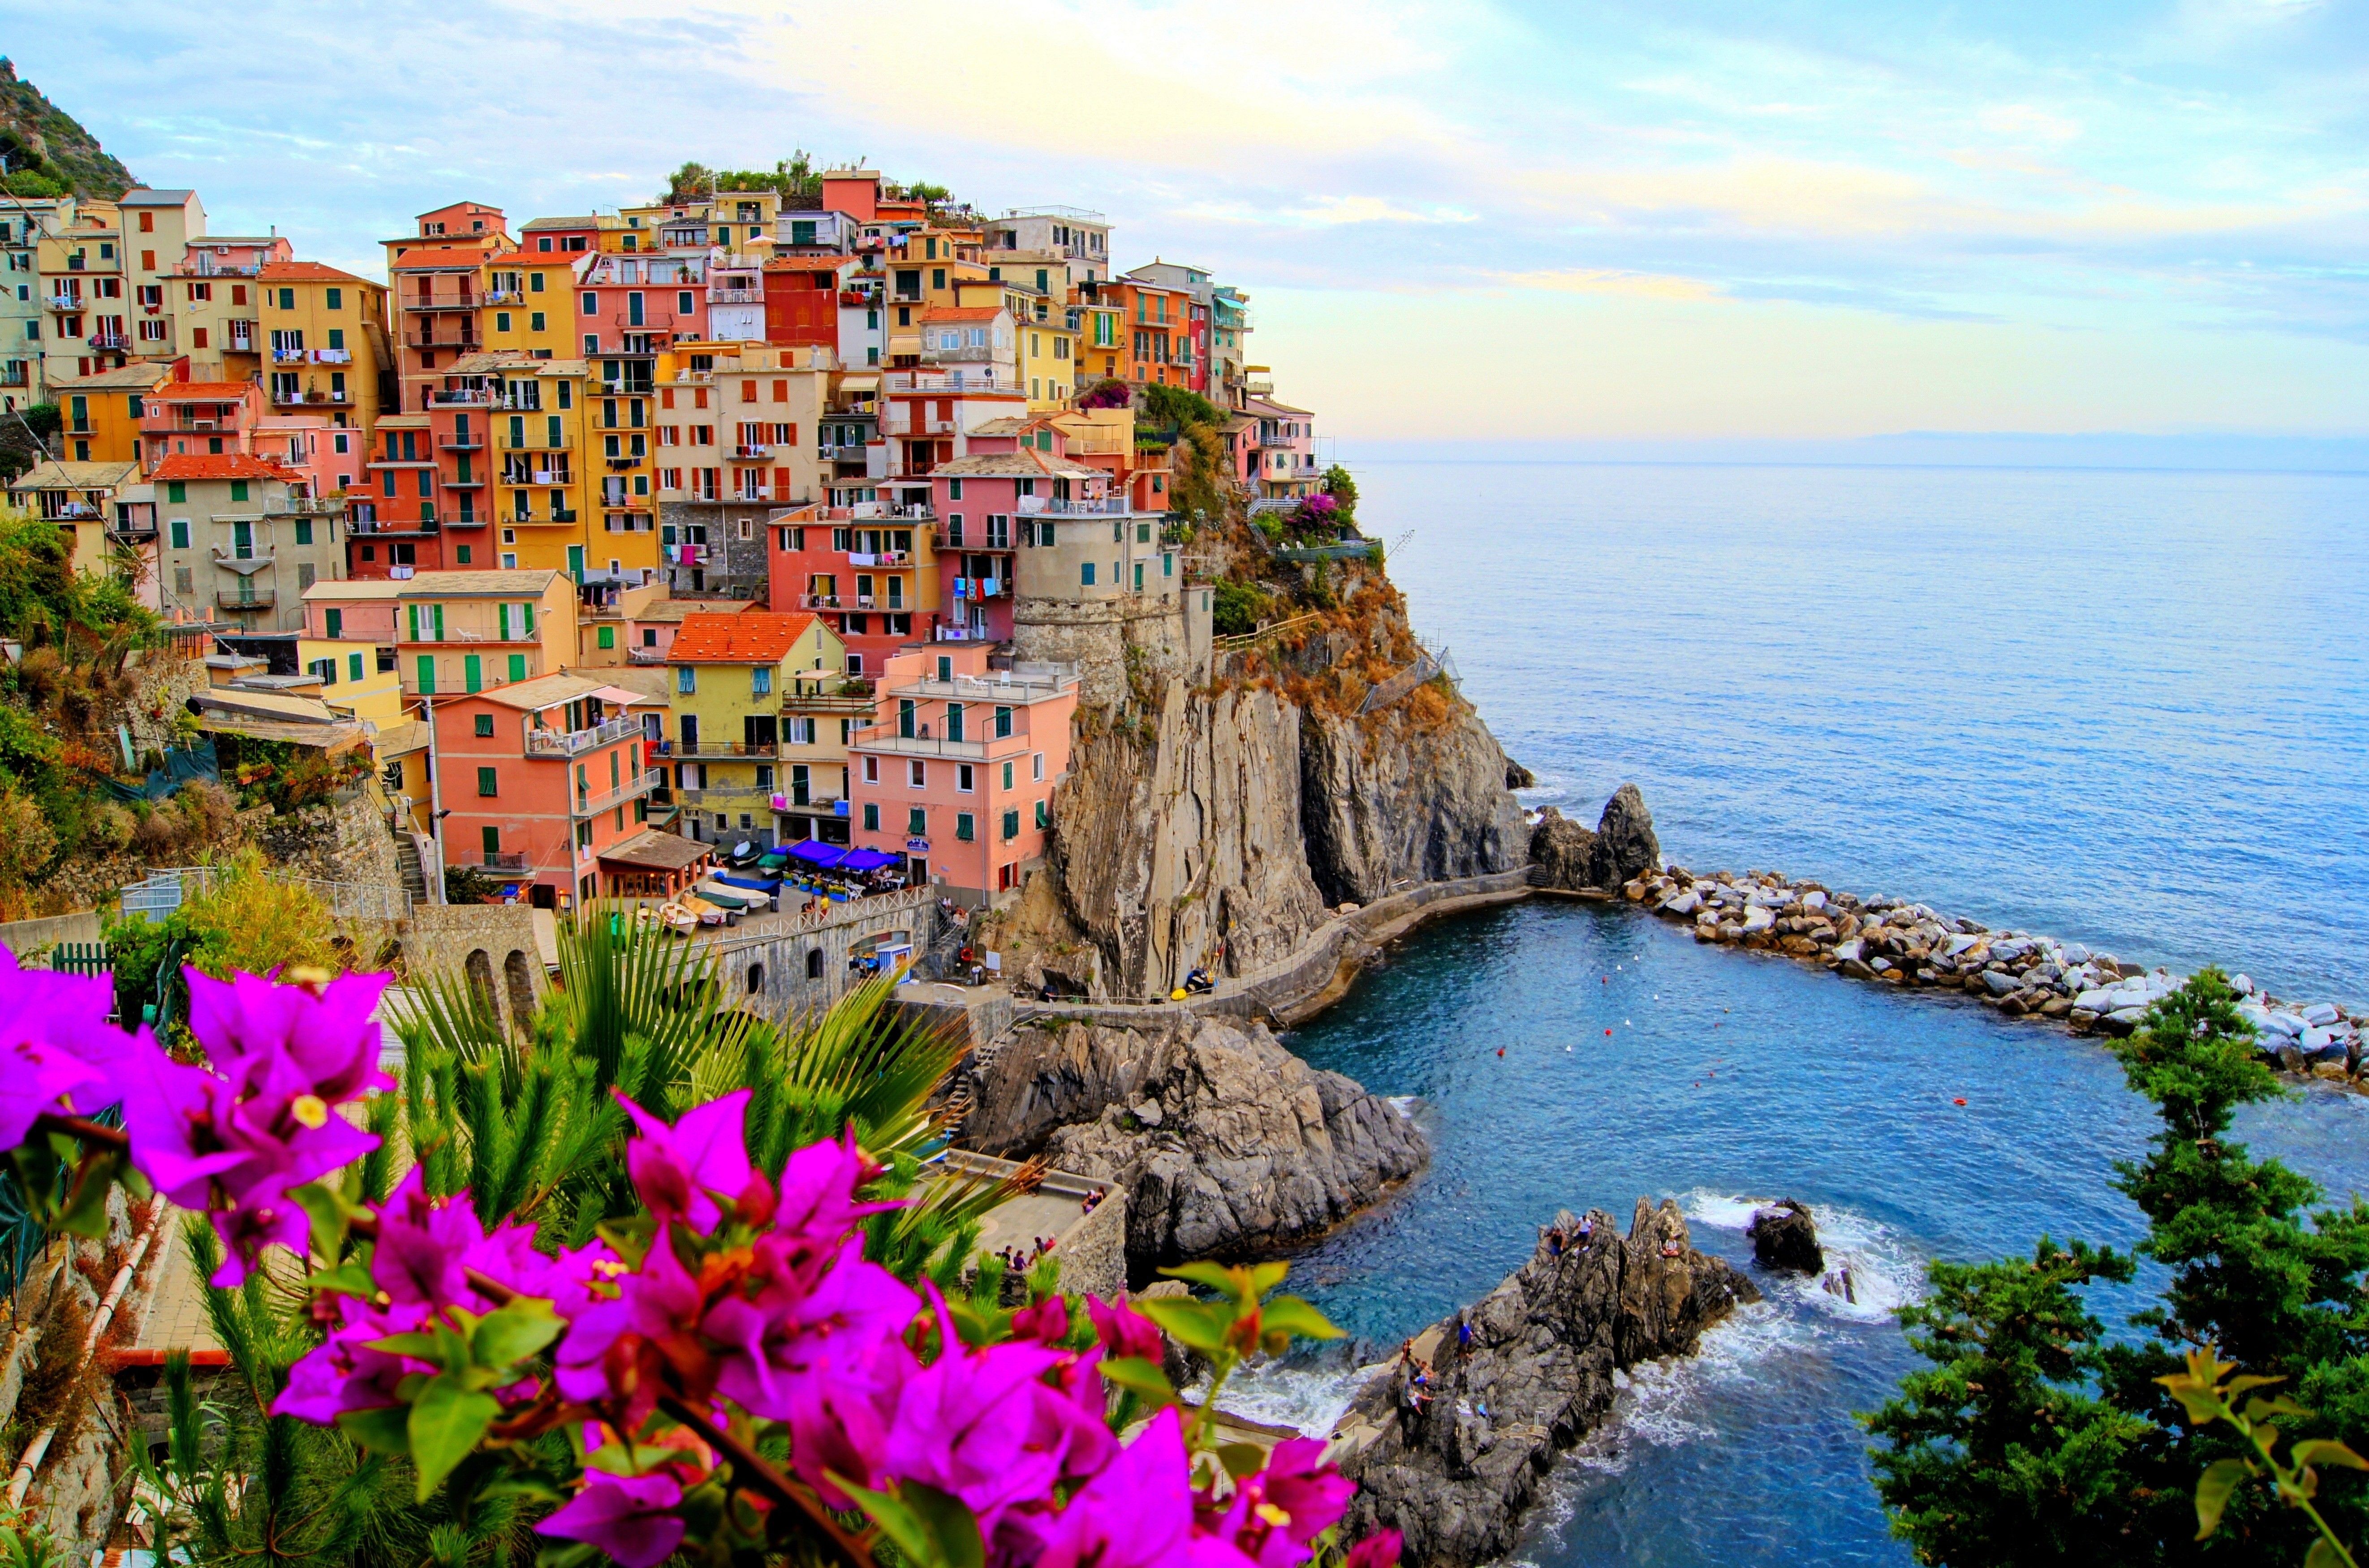 Bạn đang tìm kiếm một hình nền đẹp và miễn phí? Đến với Free Download ngay để tải về những bức ảnh đẹp nhất về nền tảng Italy cho thiết bị của bạn.